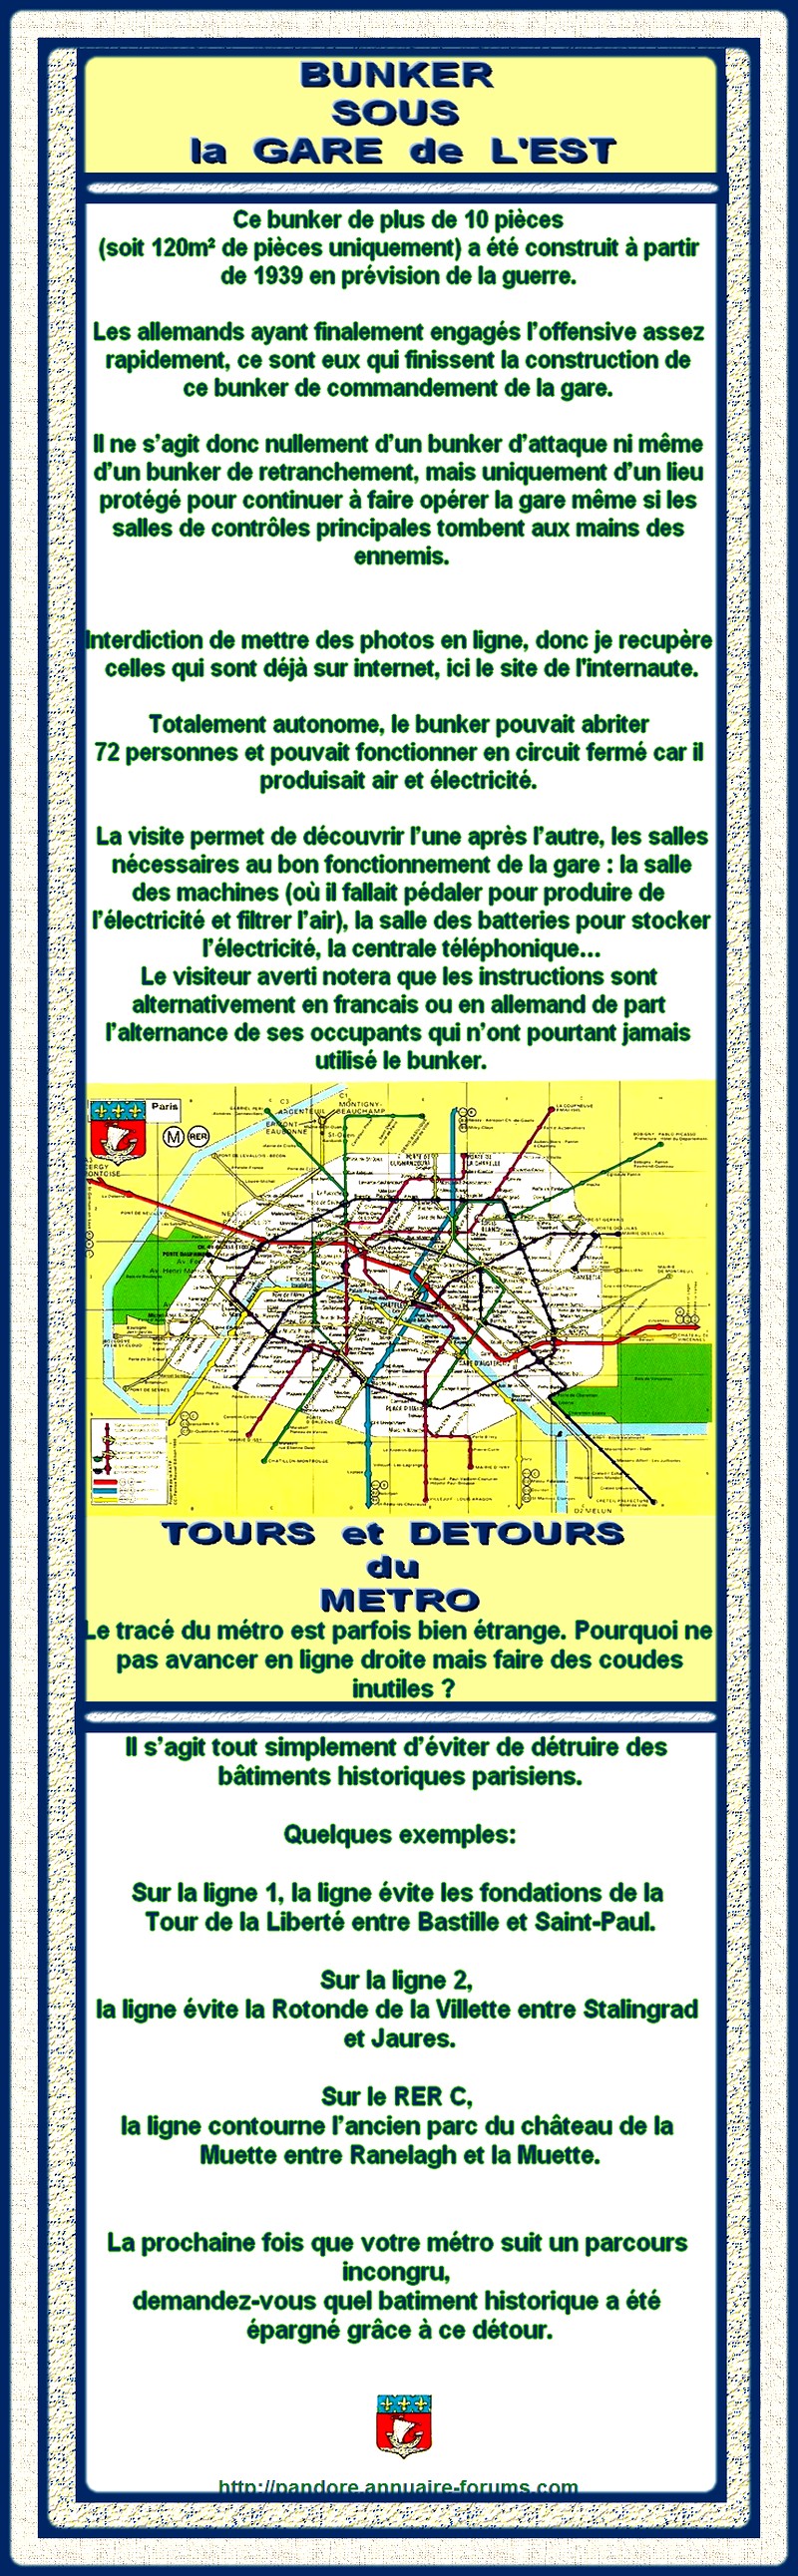 FRANCE - PARIS - BUNKER SOUS LA GARE DE L'EST - LES TOURS ET DETOURS DU METRO PARISIEN  13020912170815723410846980